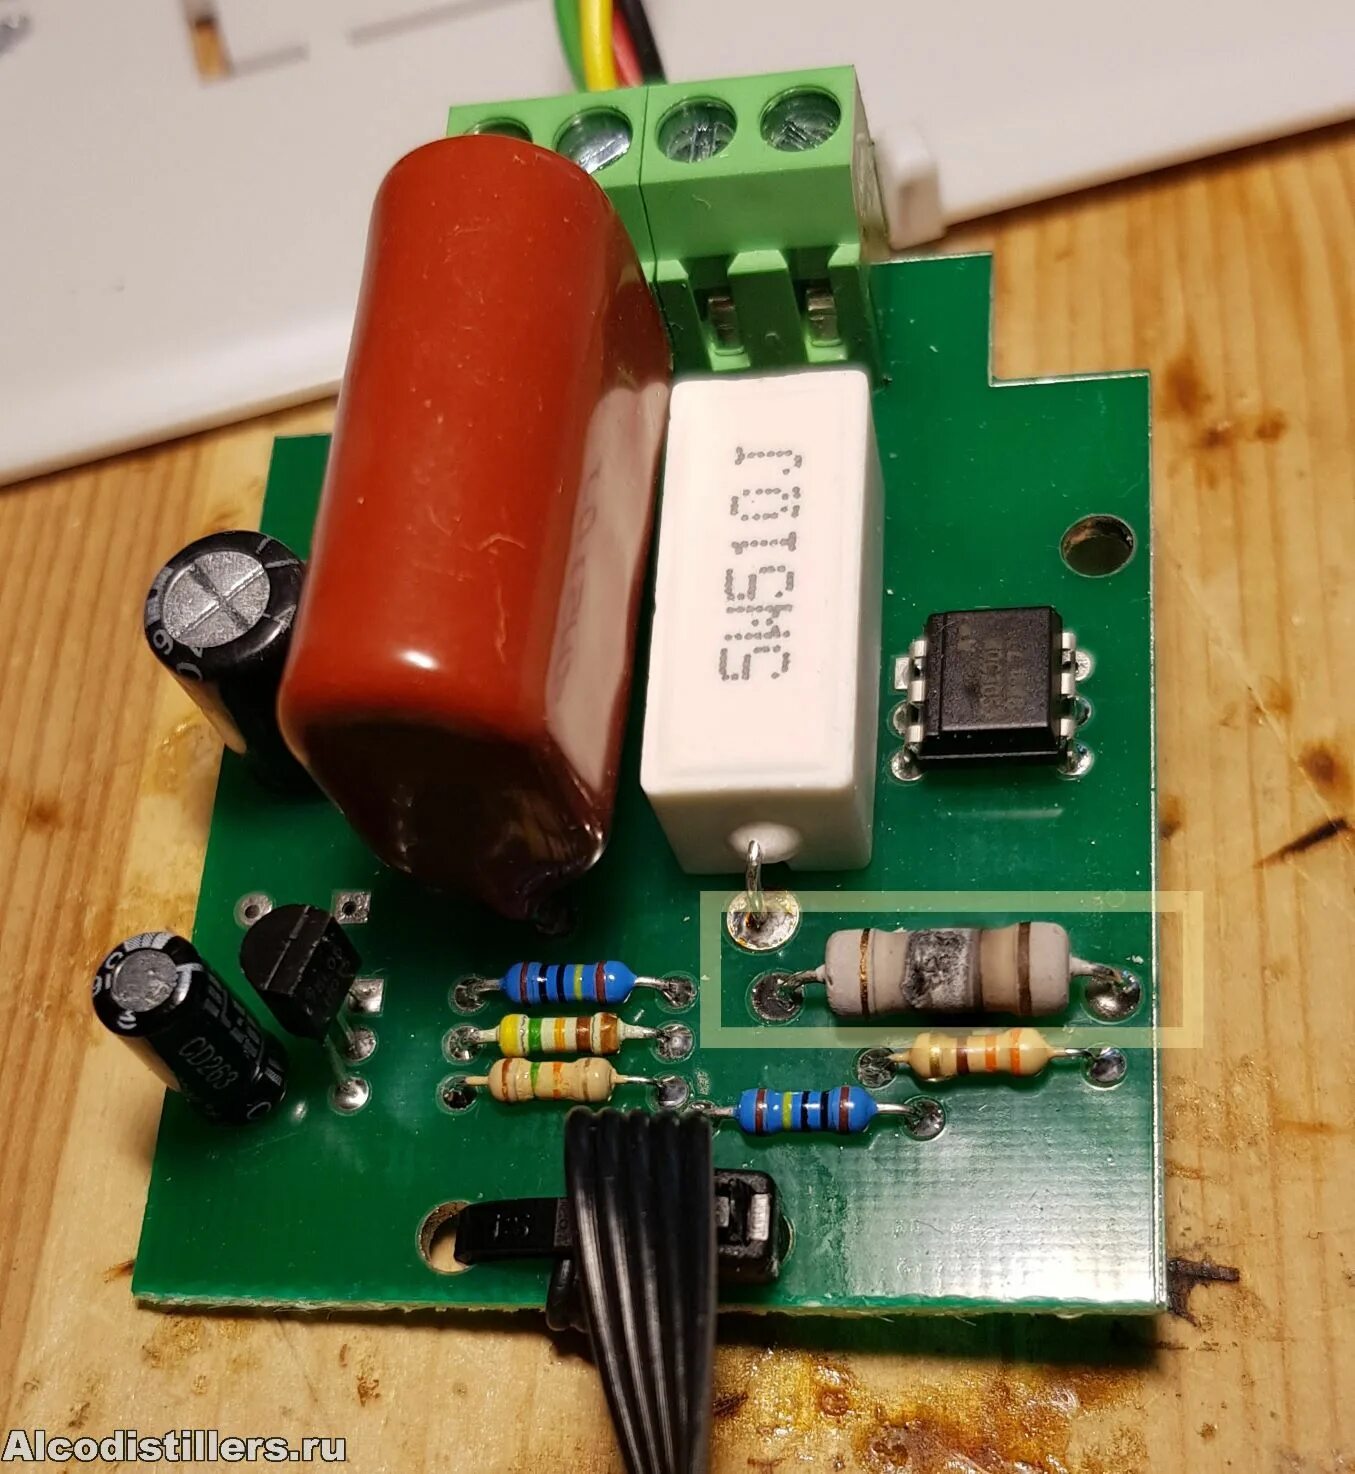 Сгорело сопротивление. Преобразователь сгорели резисторы. Сгорел резистор на дверном звонке. Регулятор мощности для ТЭНА из Китая сгорел. Плата SWR-430 сгорело 2 резистора.